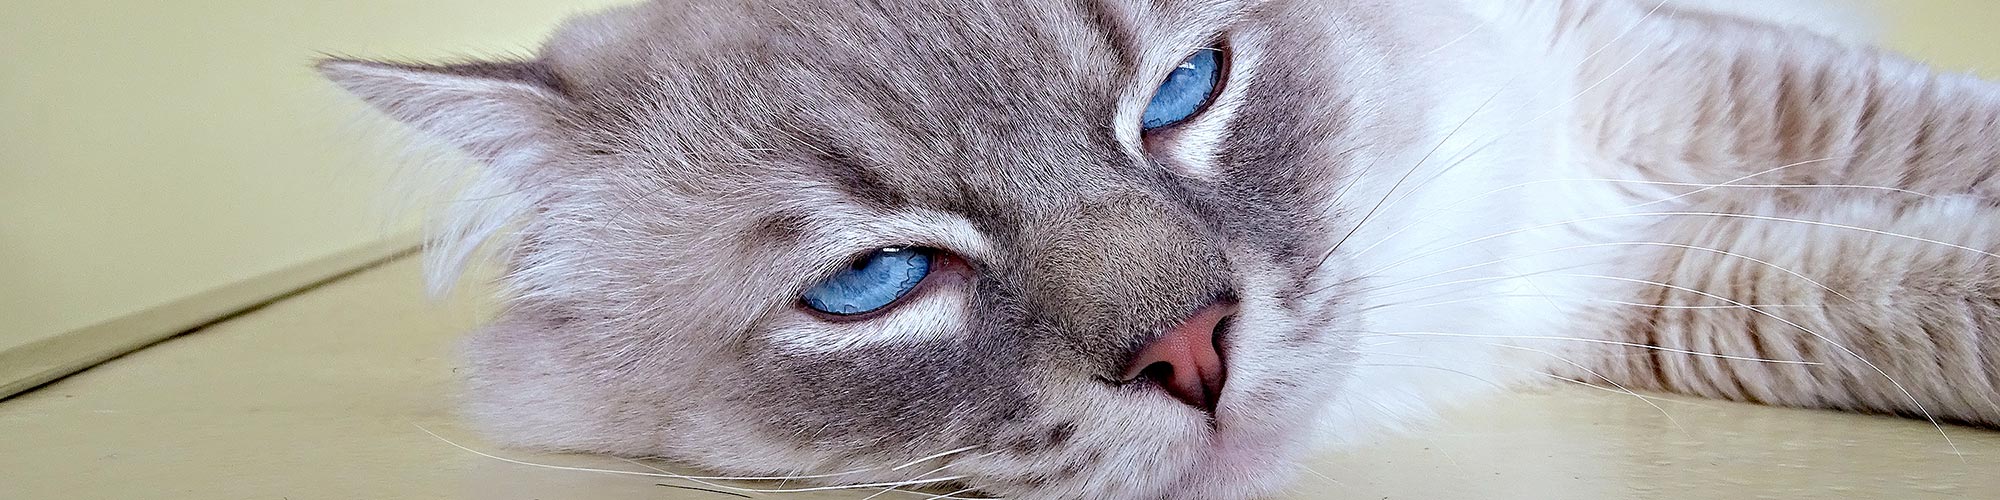 La clinique vétérinaire des Tilleroyes soigne les chats